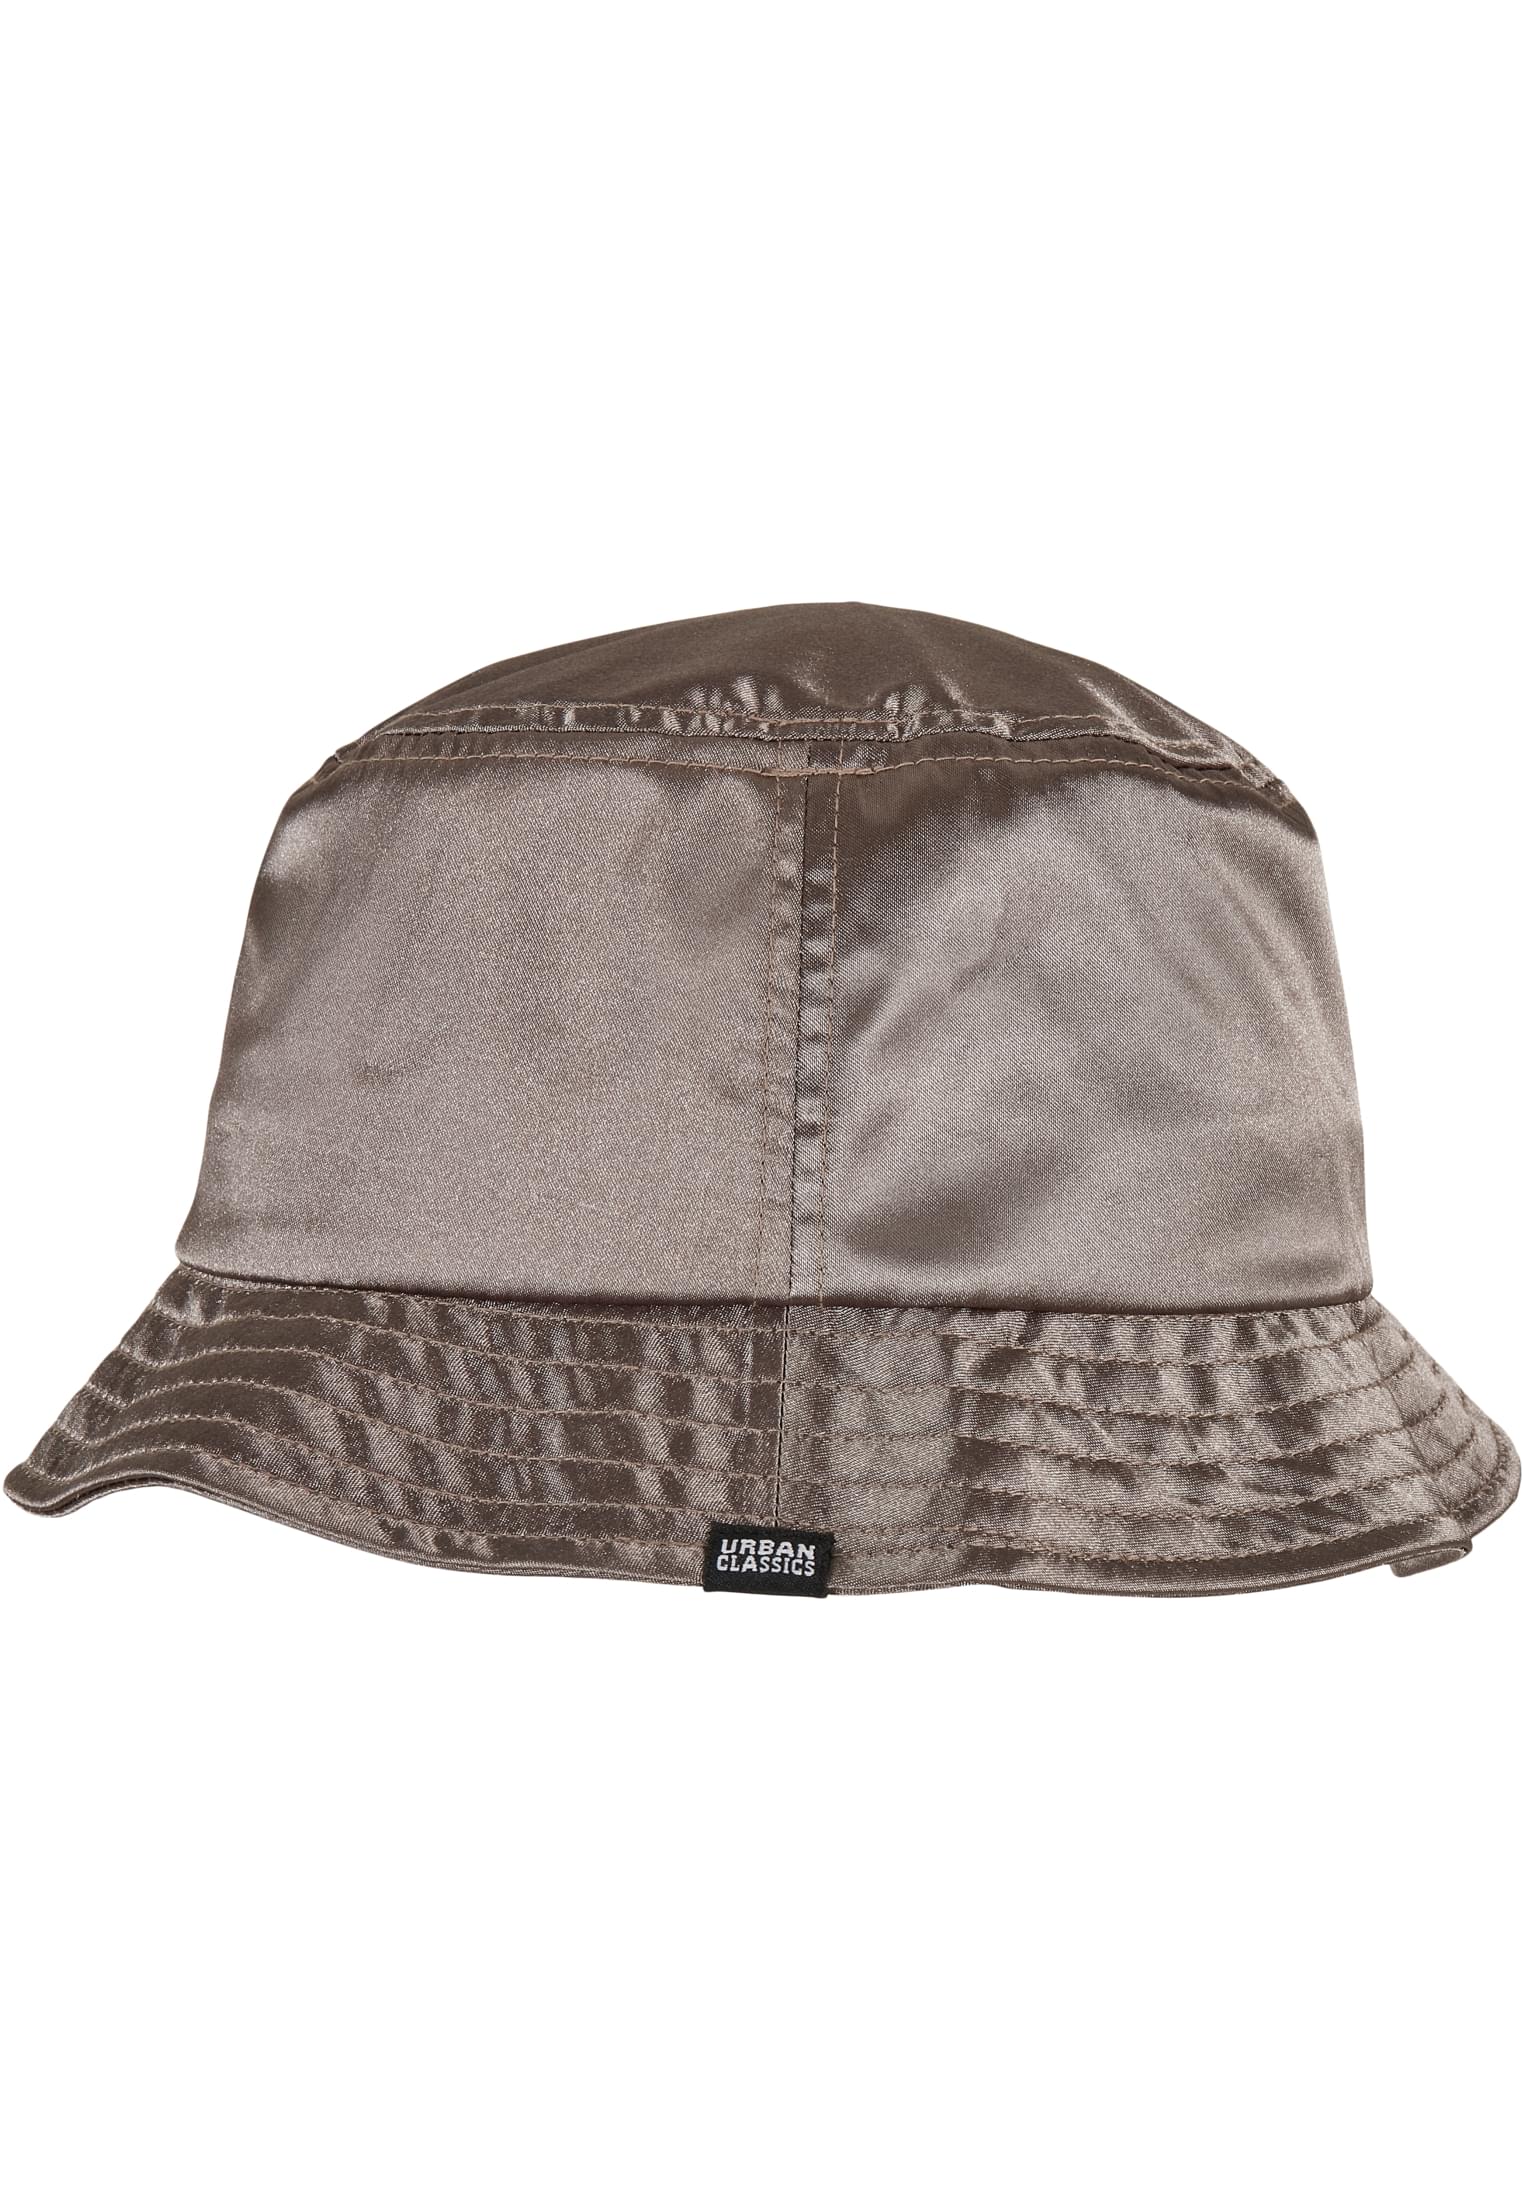 M?tzen Satin Bucket Hat in Farbe darkkhaki